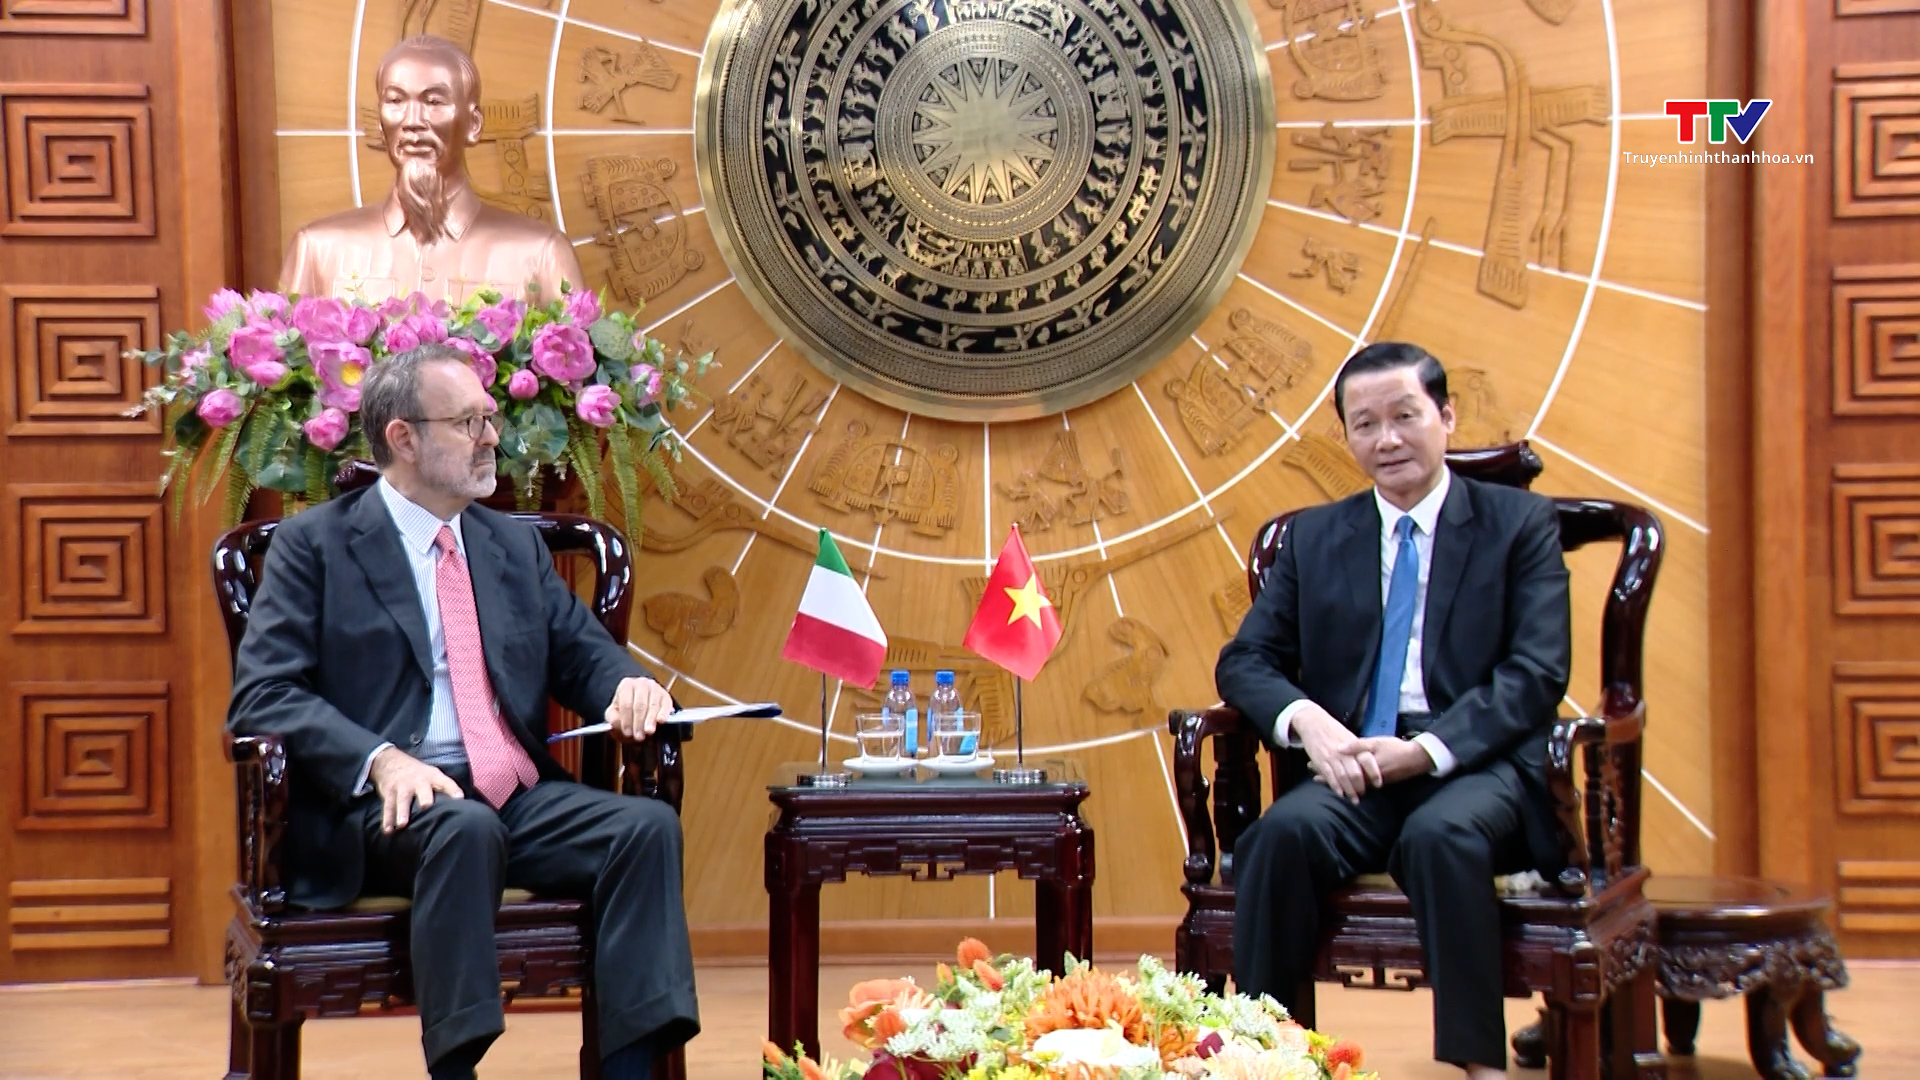 Chủ tịch UBND tỉnh Thanh Hóa tiếp xã giao Đại sứ Italia tại Việt Nam- Ảnh 2.